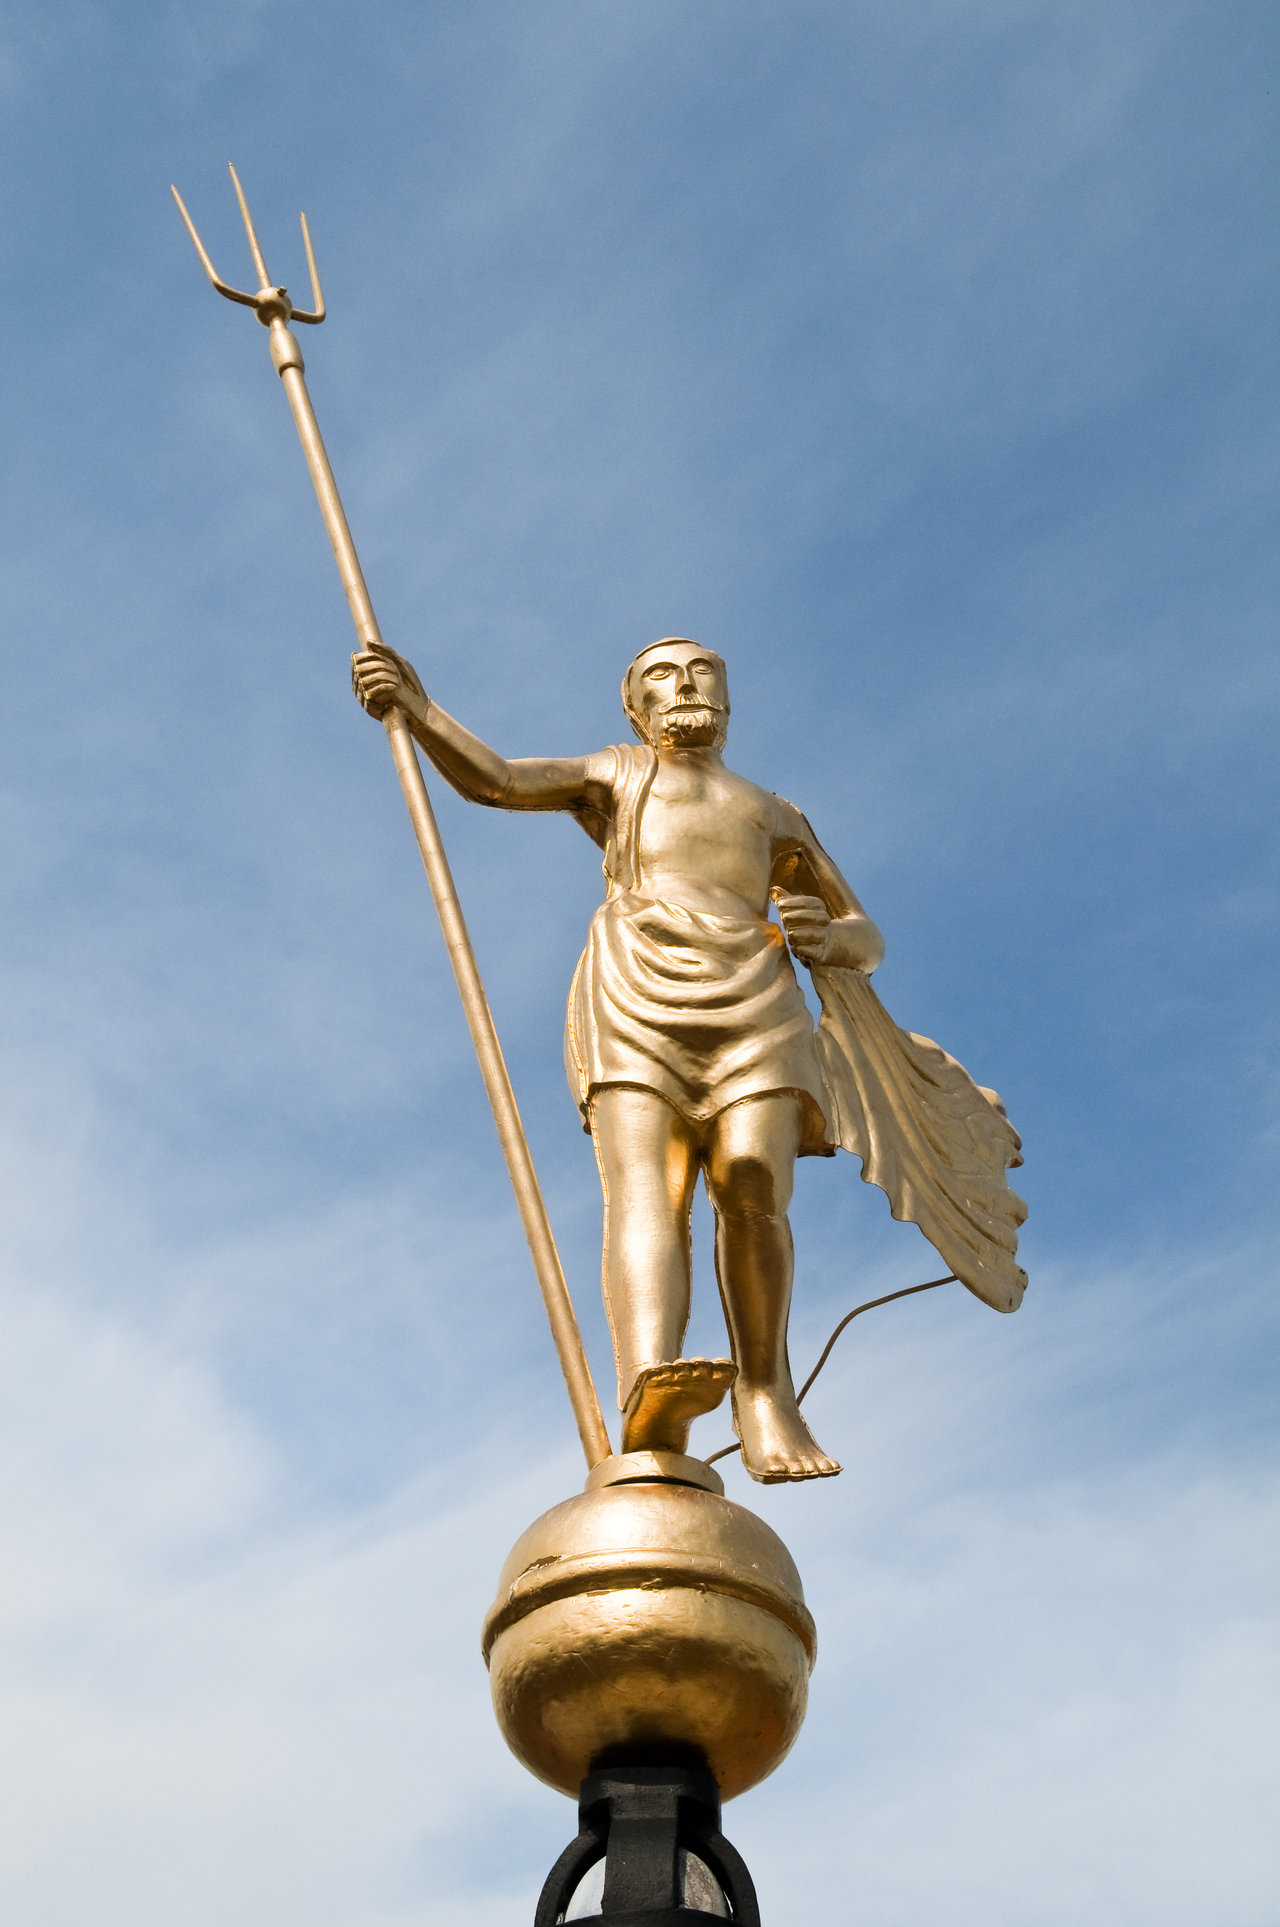 Het pronkstuk van het Stadhuismuseum voor de Museumweek 2021 is de gouden windwijzer die de toren van het museumpand al sinds 1554 siert aan de Meelstaat in Zierikzee. De windwijzer stelt Neptunus met zijn drietand voor. 